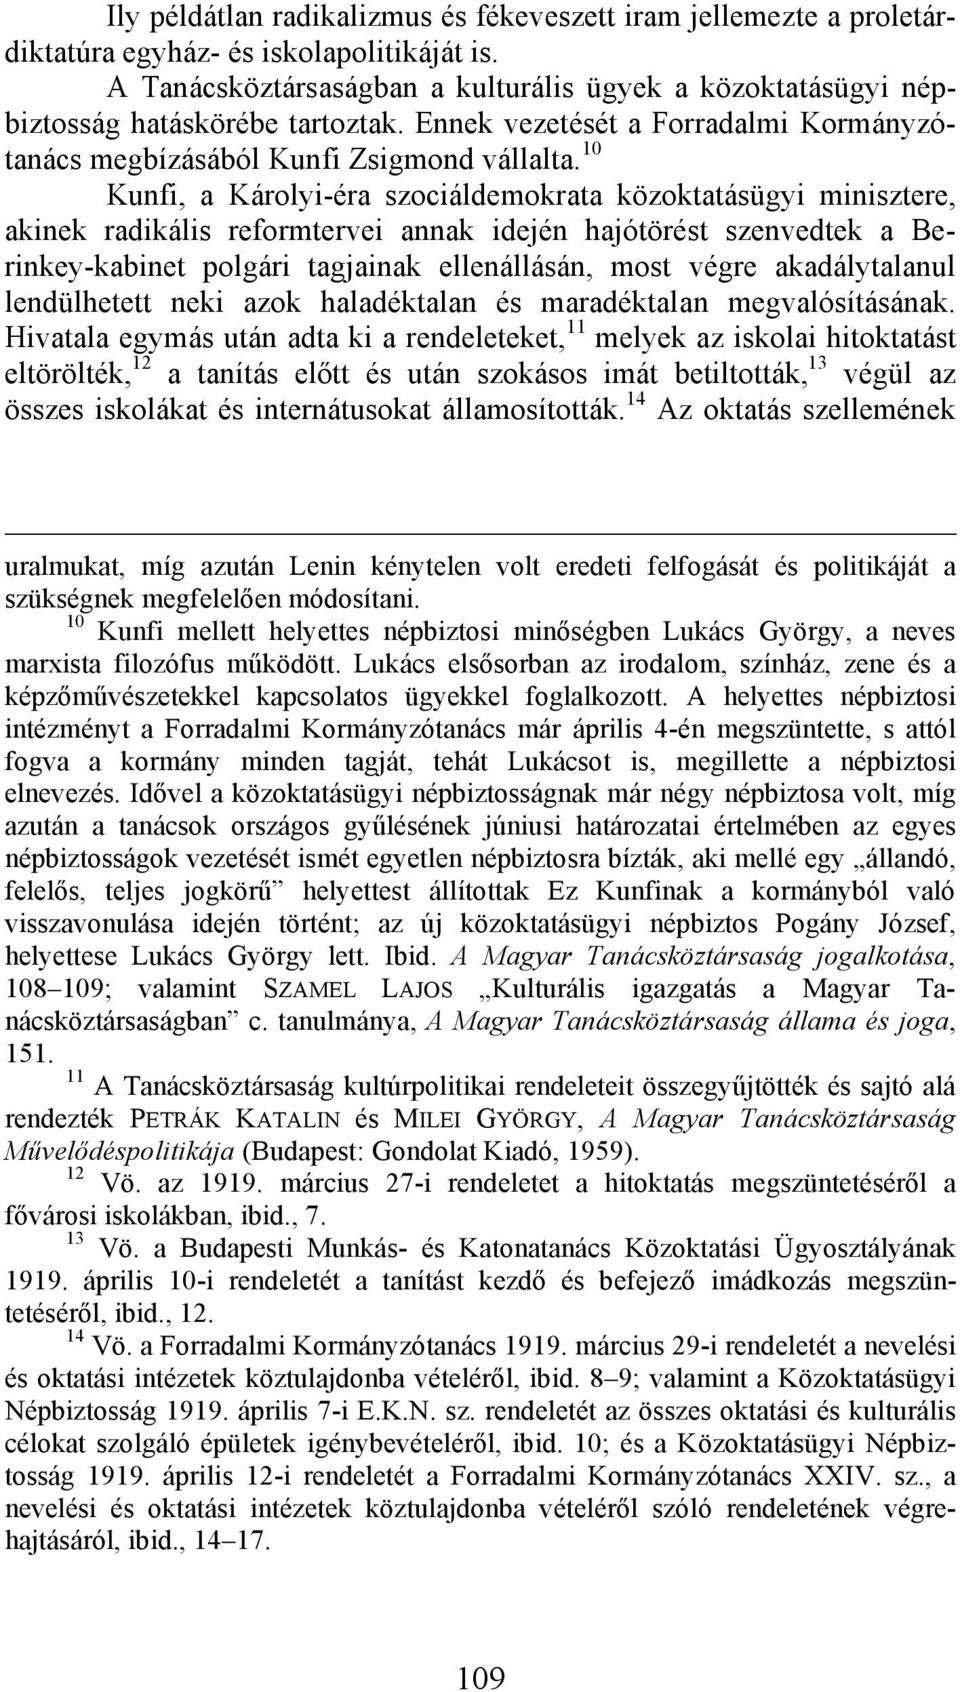 10 Kunfi, a Károlyi-éra szociáldemokrata közoktatásügyi minisztere, akinek radikális reformtervei annak idején hajótörést szenvedtek a Berinkey-kabinet polgári tagjainak ellenállásán, most végre